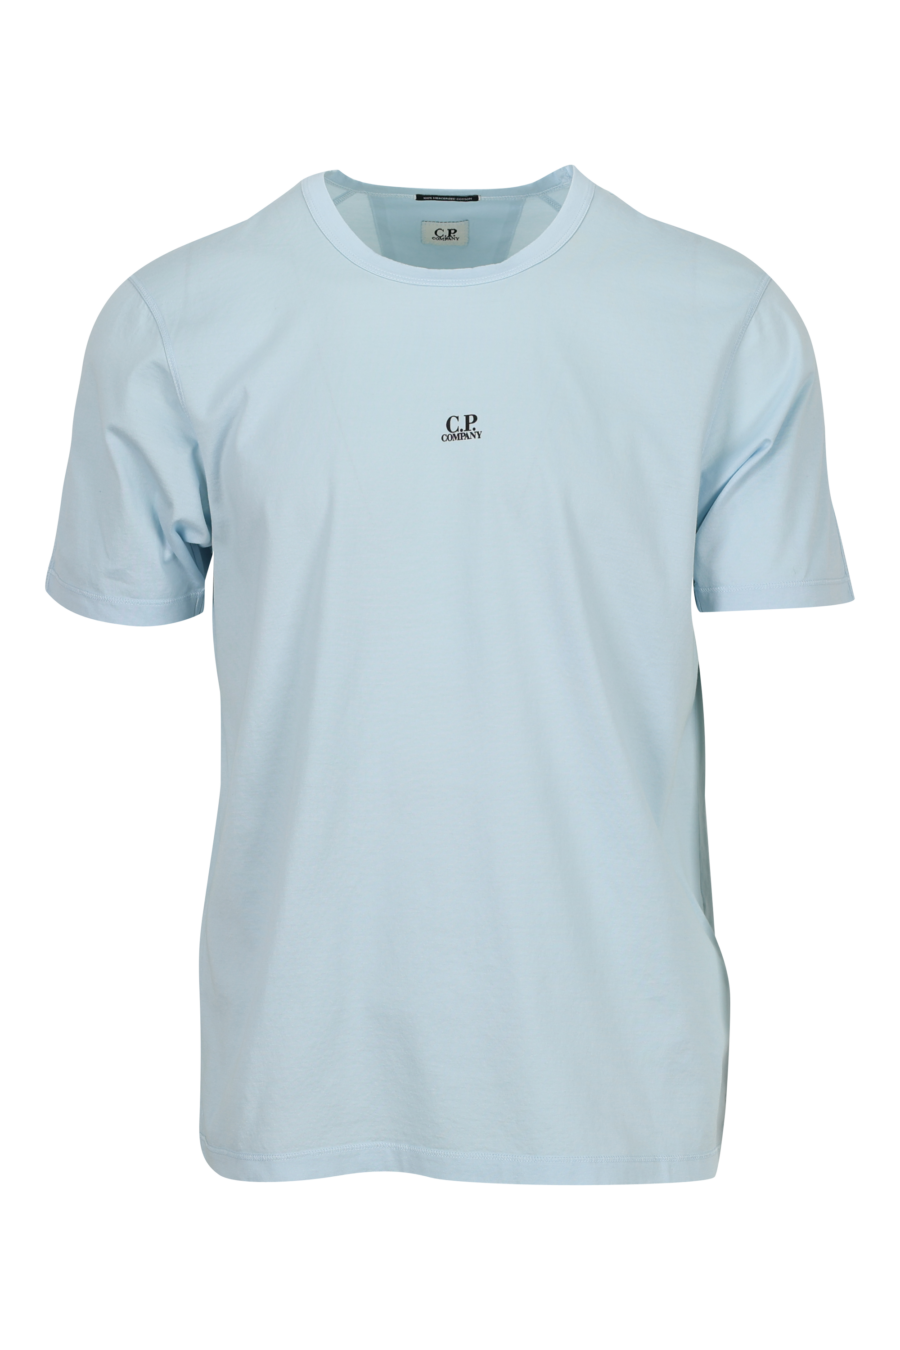 Camiseta azul claro con minilogo "cp" centrado - 7620943760644